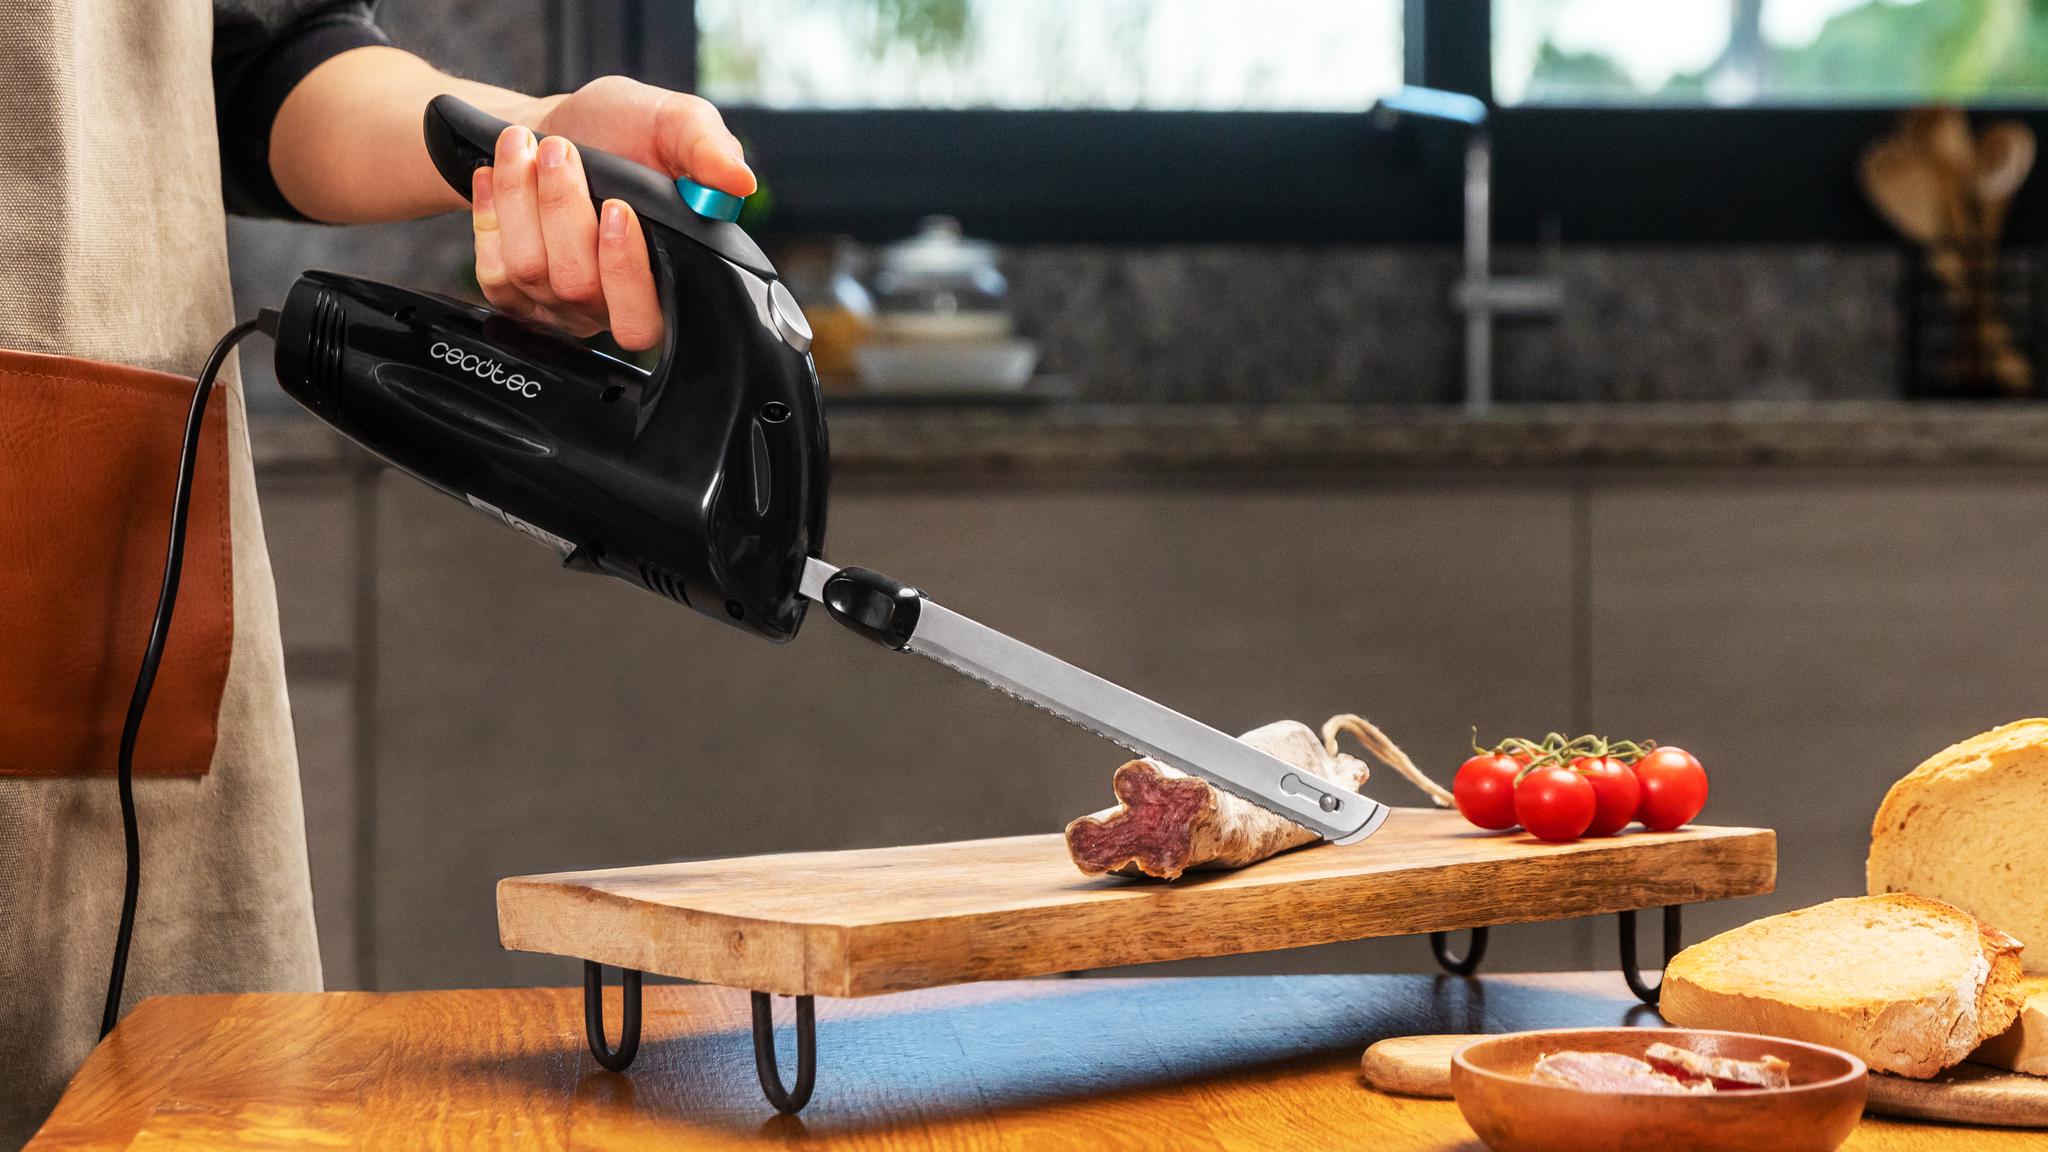 Grazie al suo design ergonomico, il coltello elettrico Cut-Eat 1800 Black è facile da usare e senza usura.